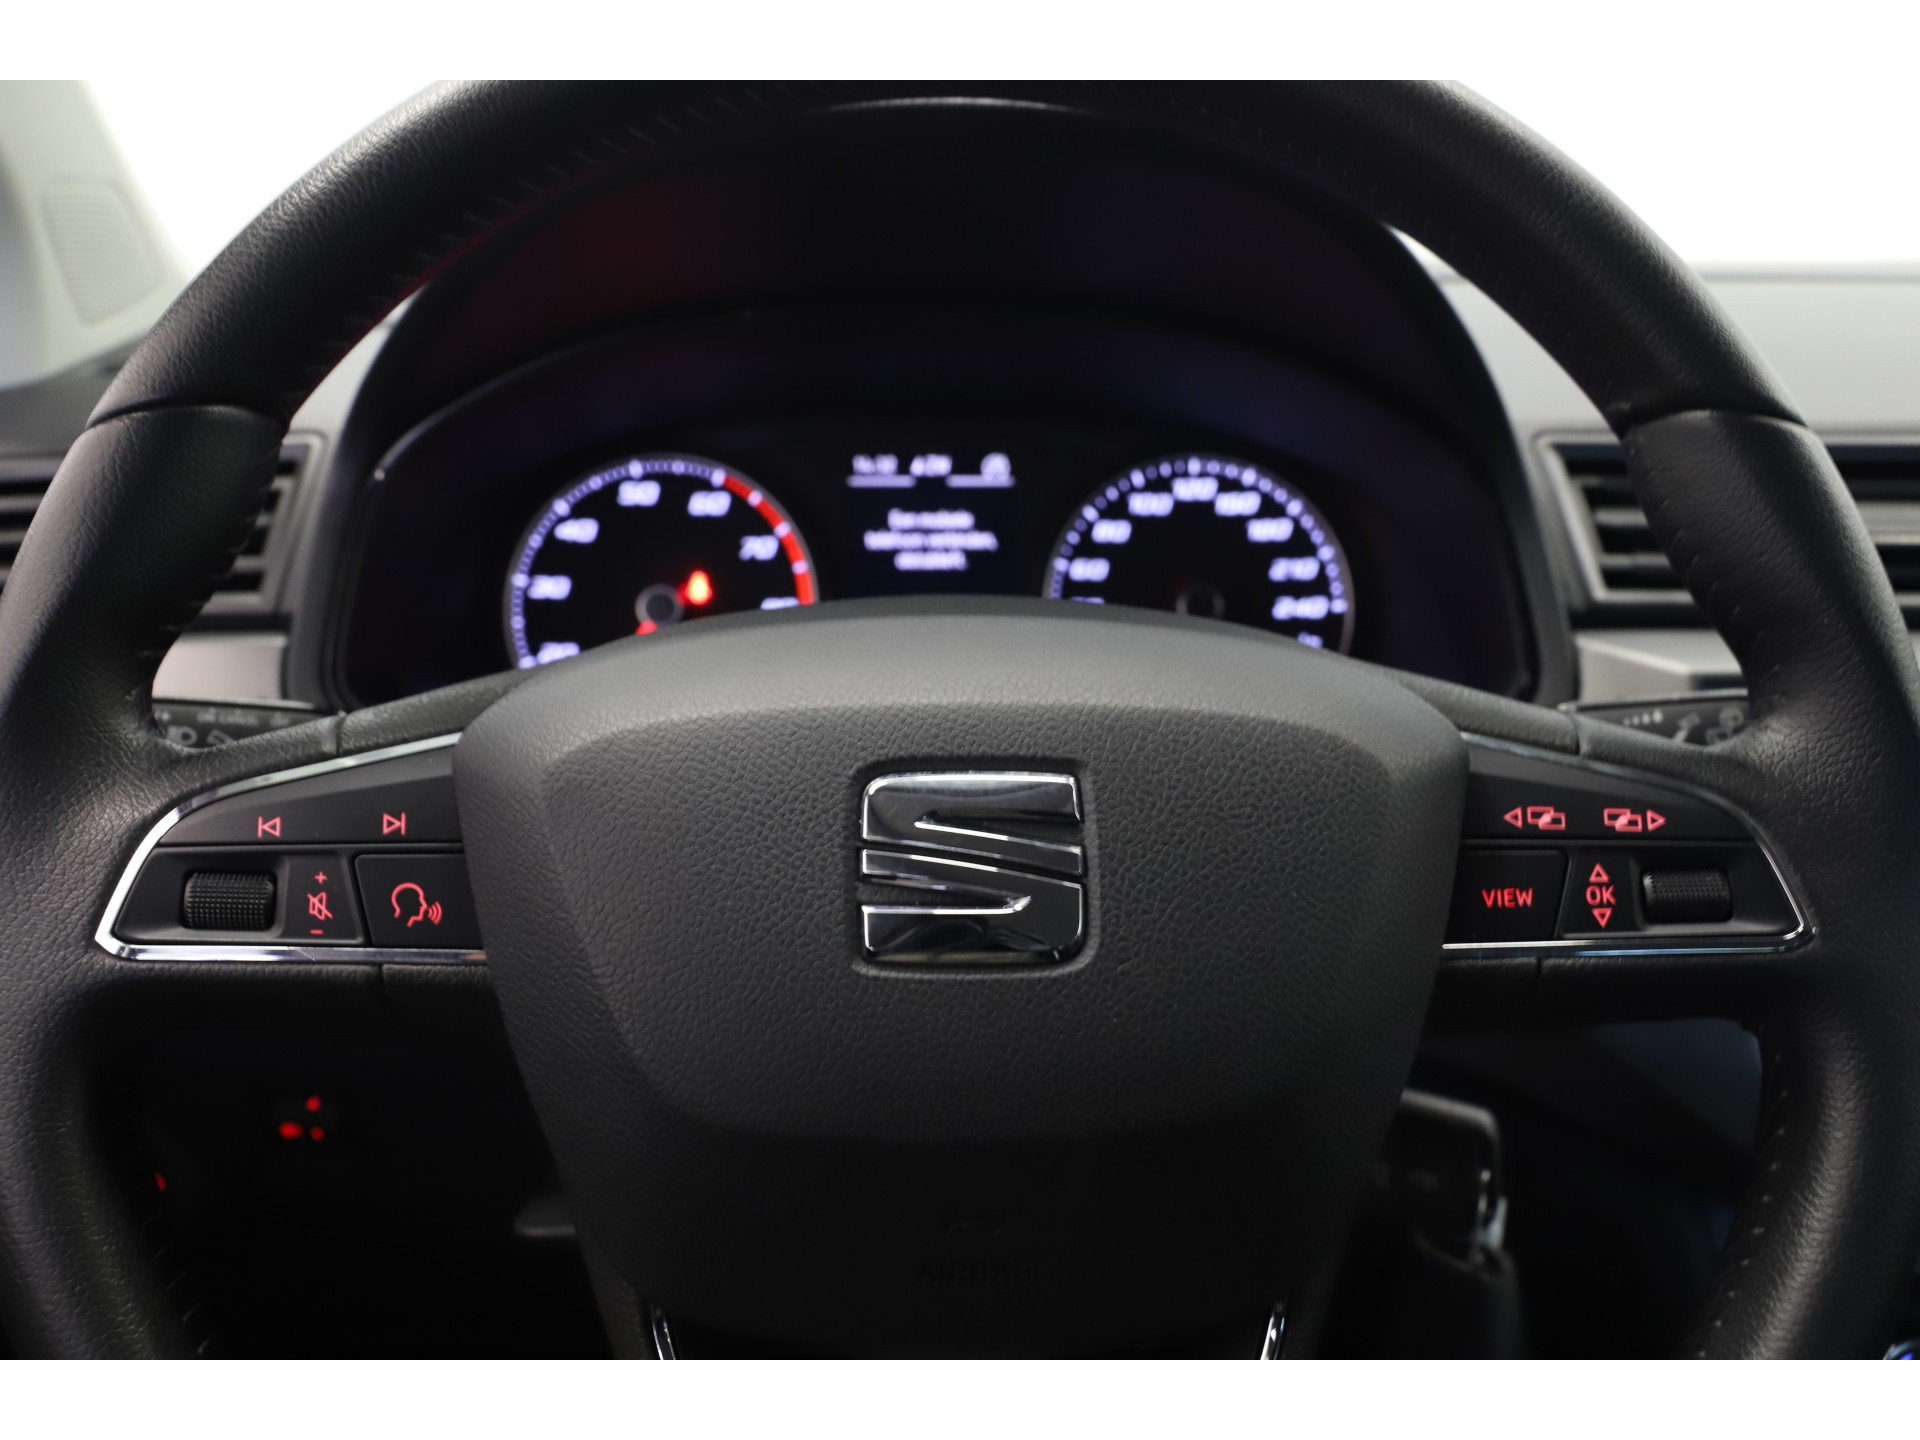 SEAT - Ibiza 1.0 TSI 95pk Style Business Intense - 2021